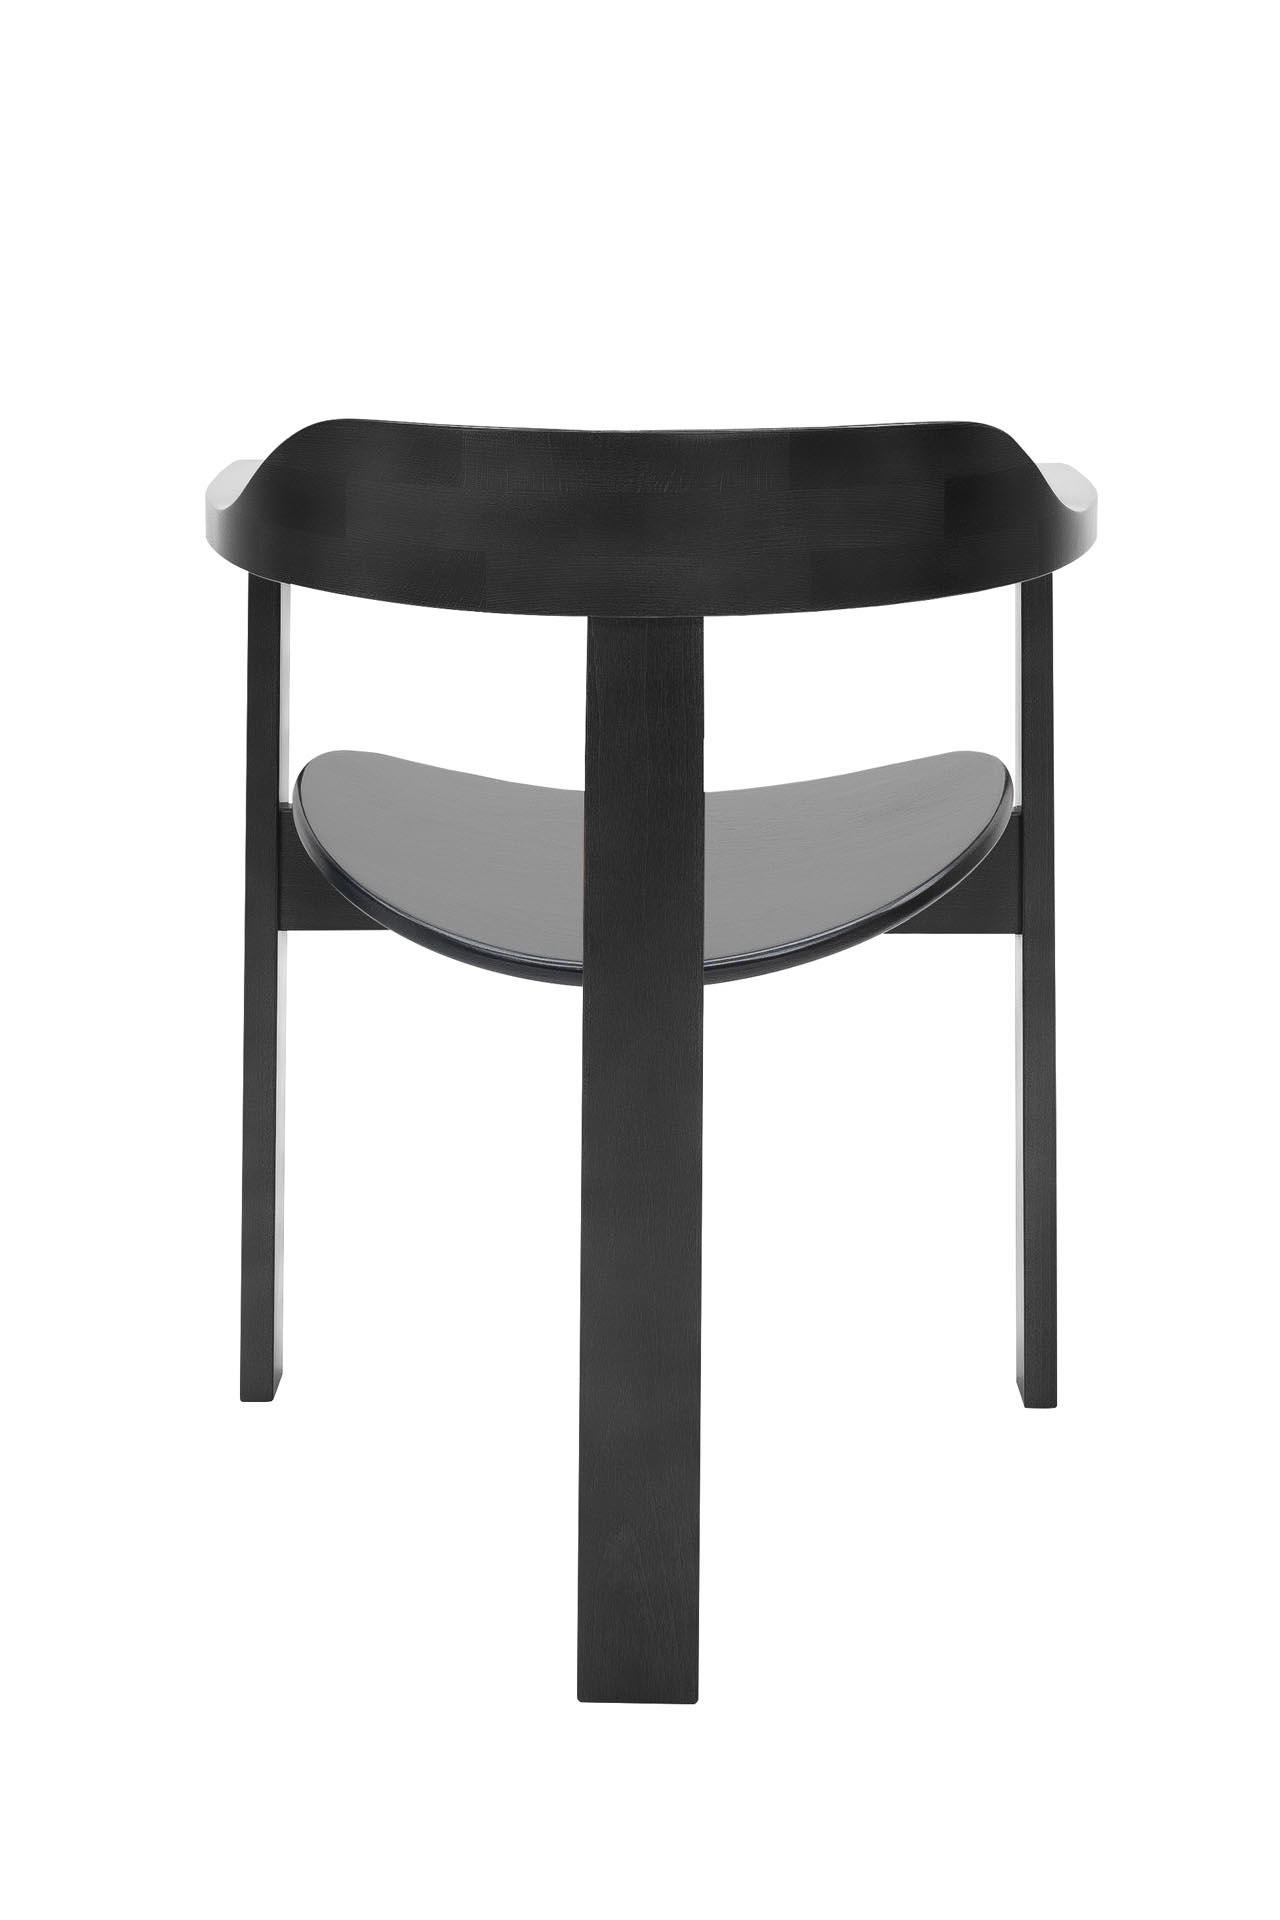 Contemporary Mid-Century Modern, Haussmann Armchair, by Robert & Trix Haussmann, Design, 1964 For Sale